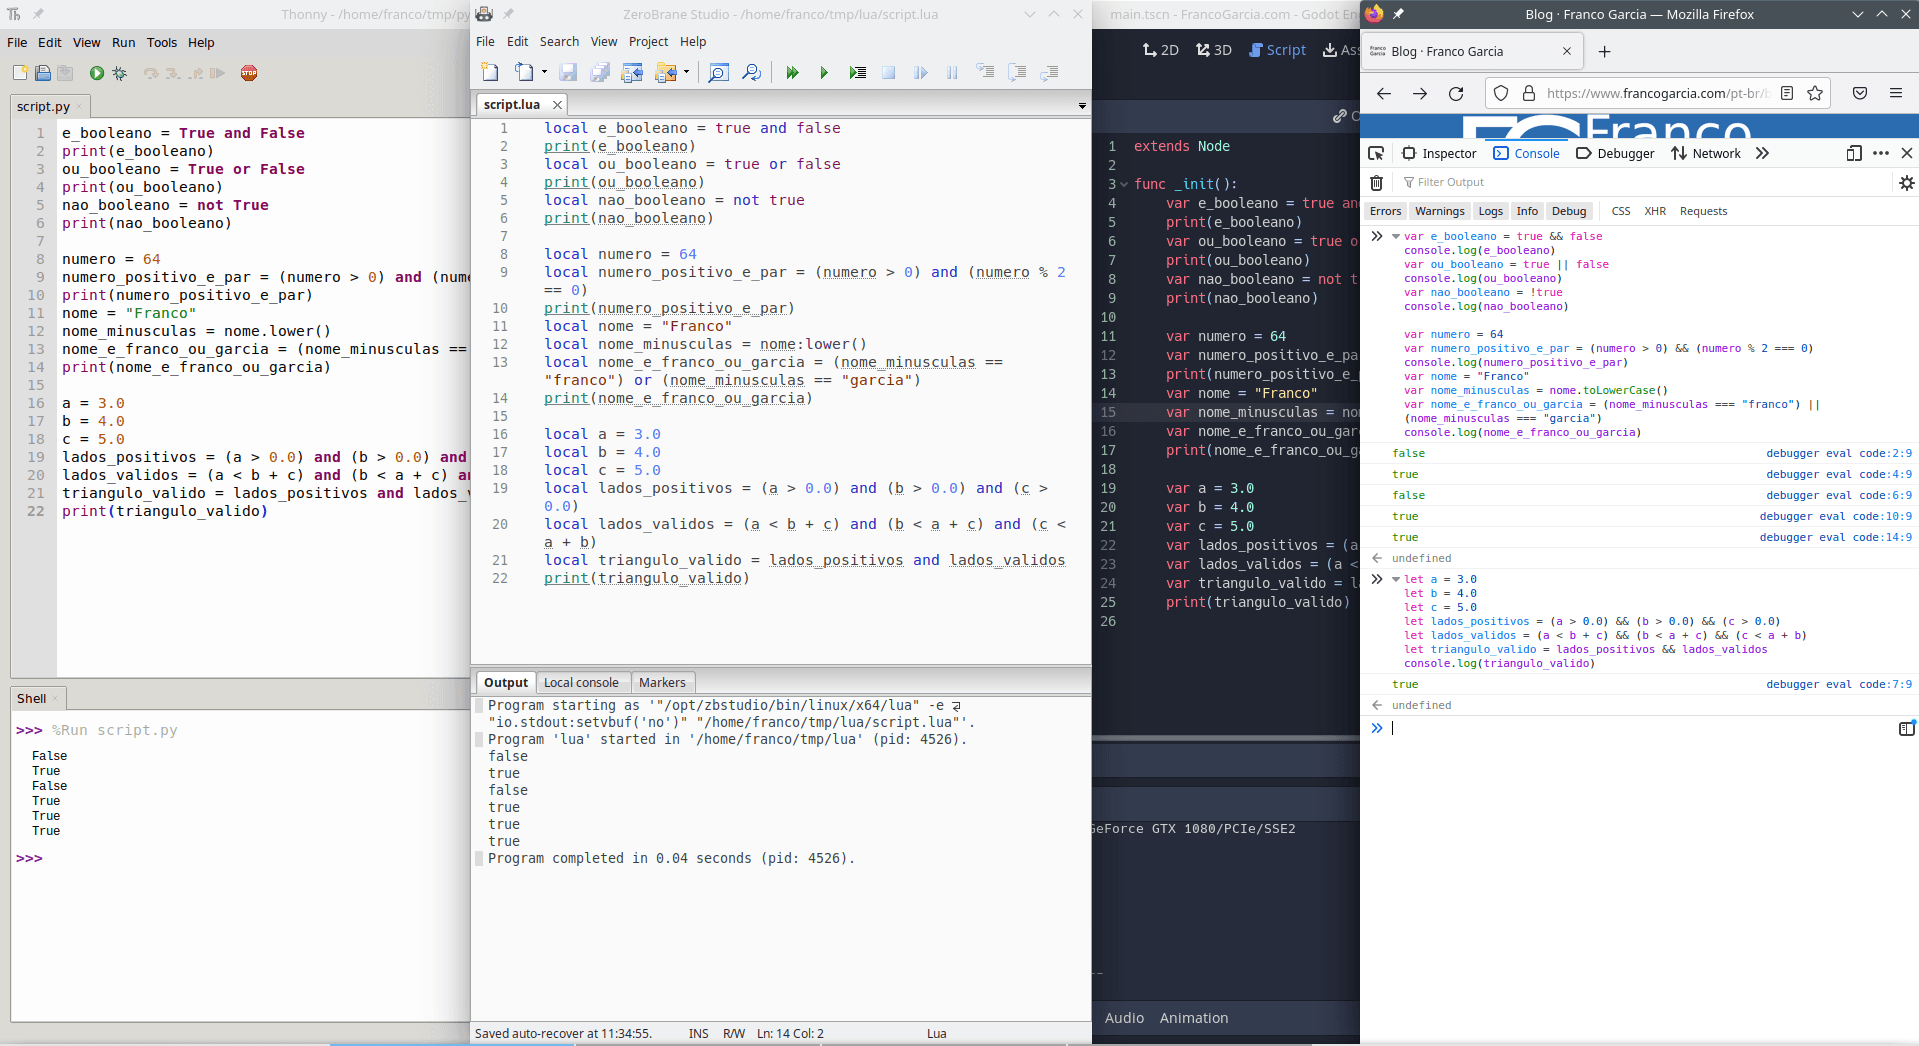 Exemplos de uso de operações lógicas em Python, Lua, GDScript e JavaScript.